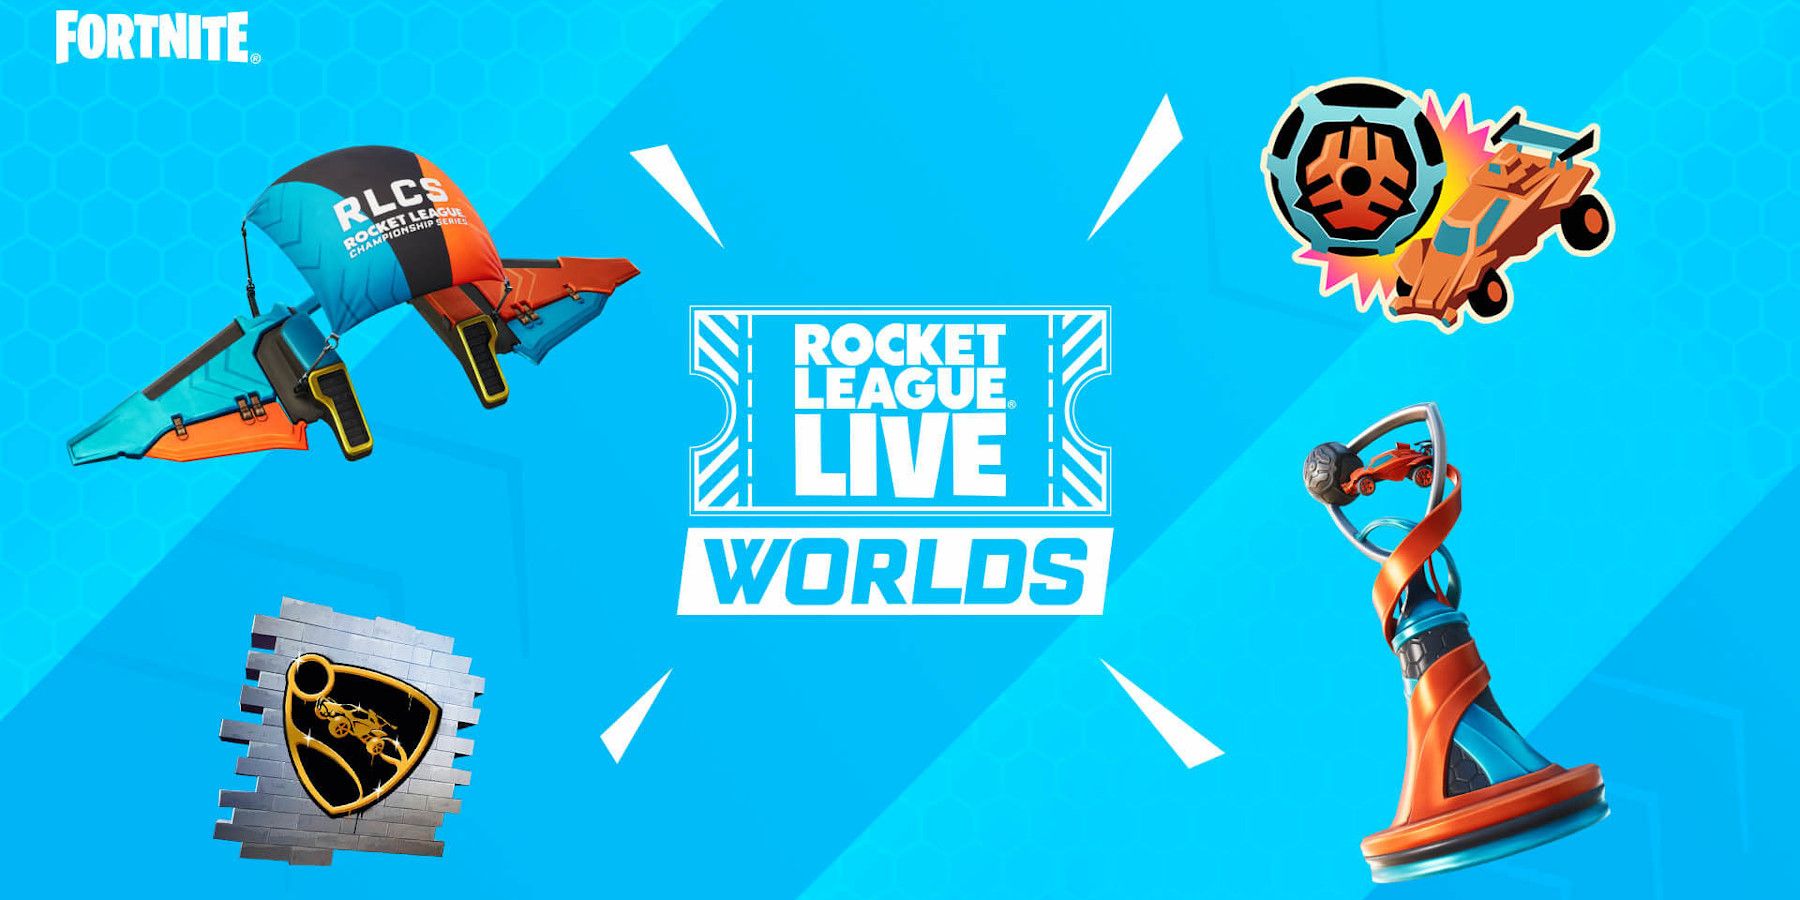 fortnite rocket league live quest